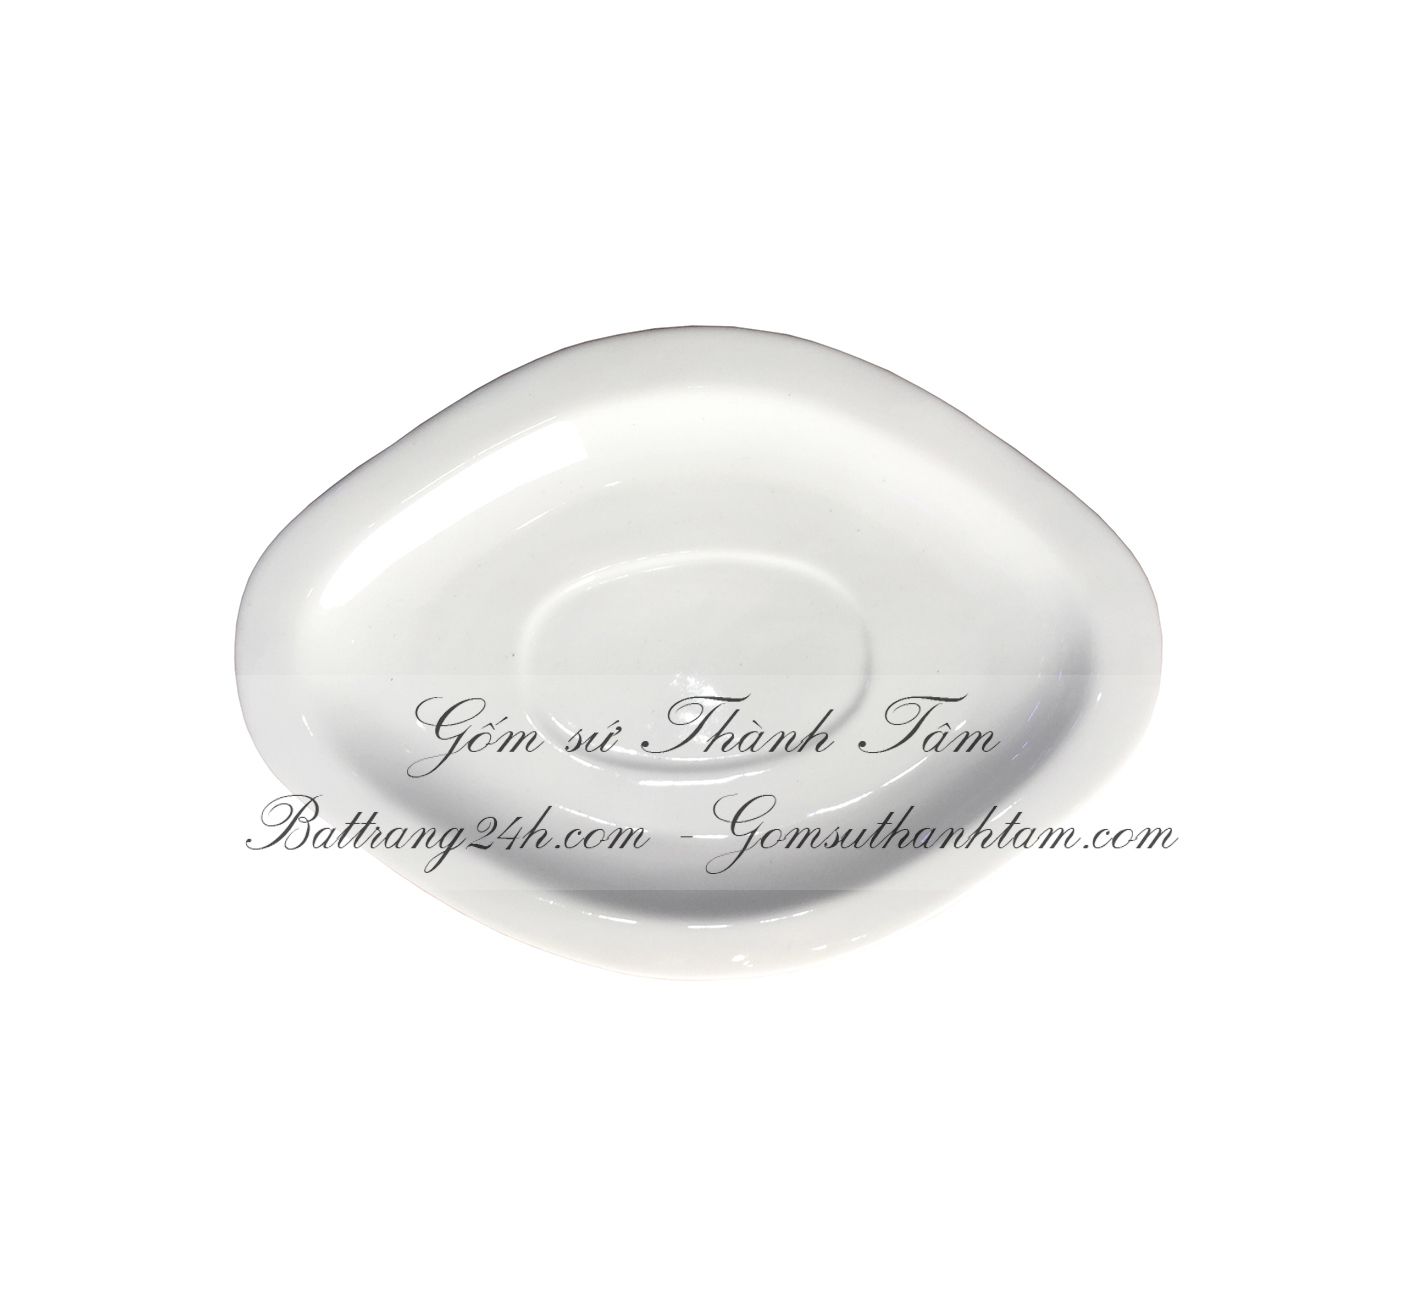 Bộ bát đĩa trắng Bát Tràng đĩa bầu dục gốm sứ cao cấp, bộ bát đĩa chất lượng nhất